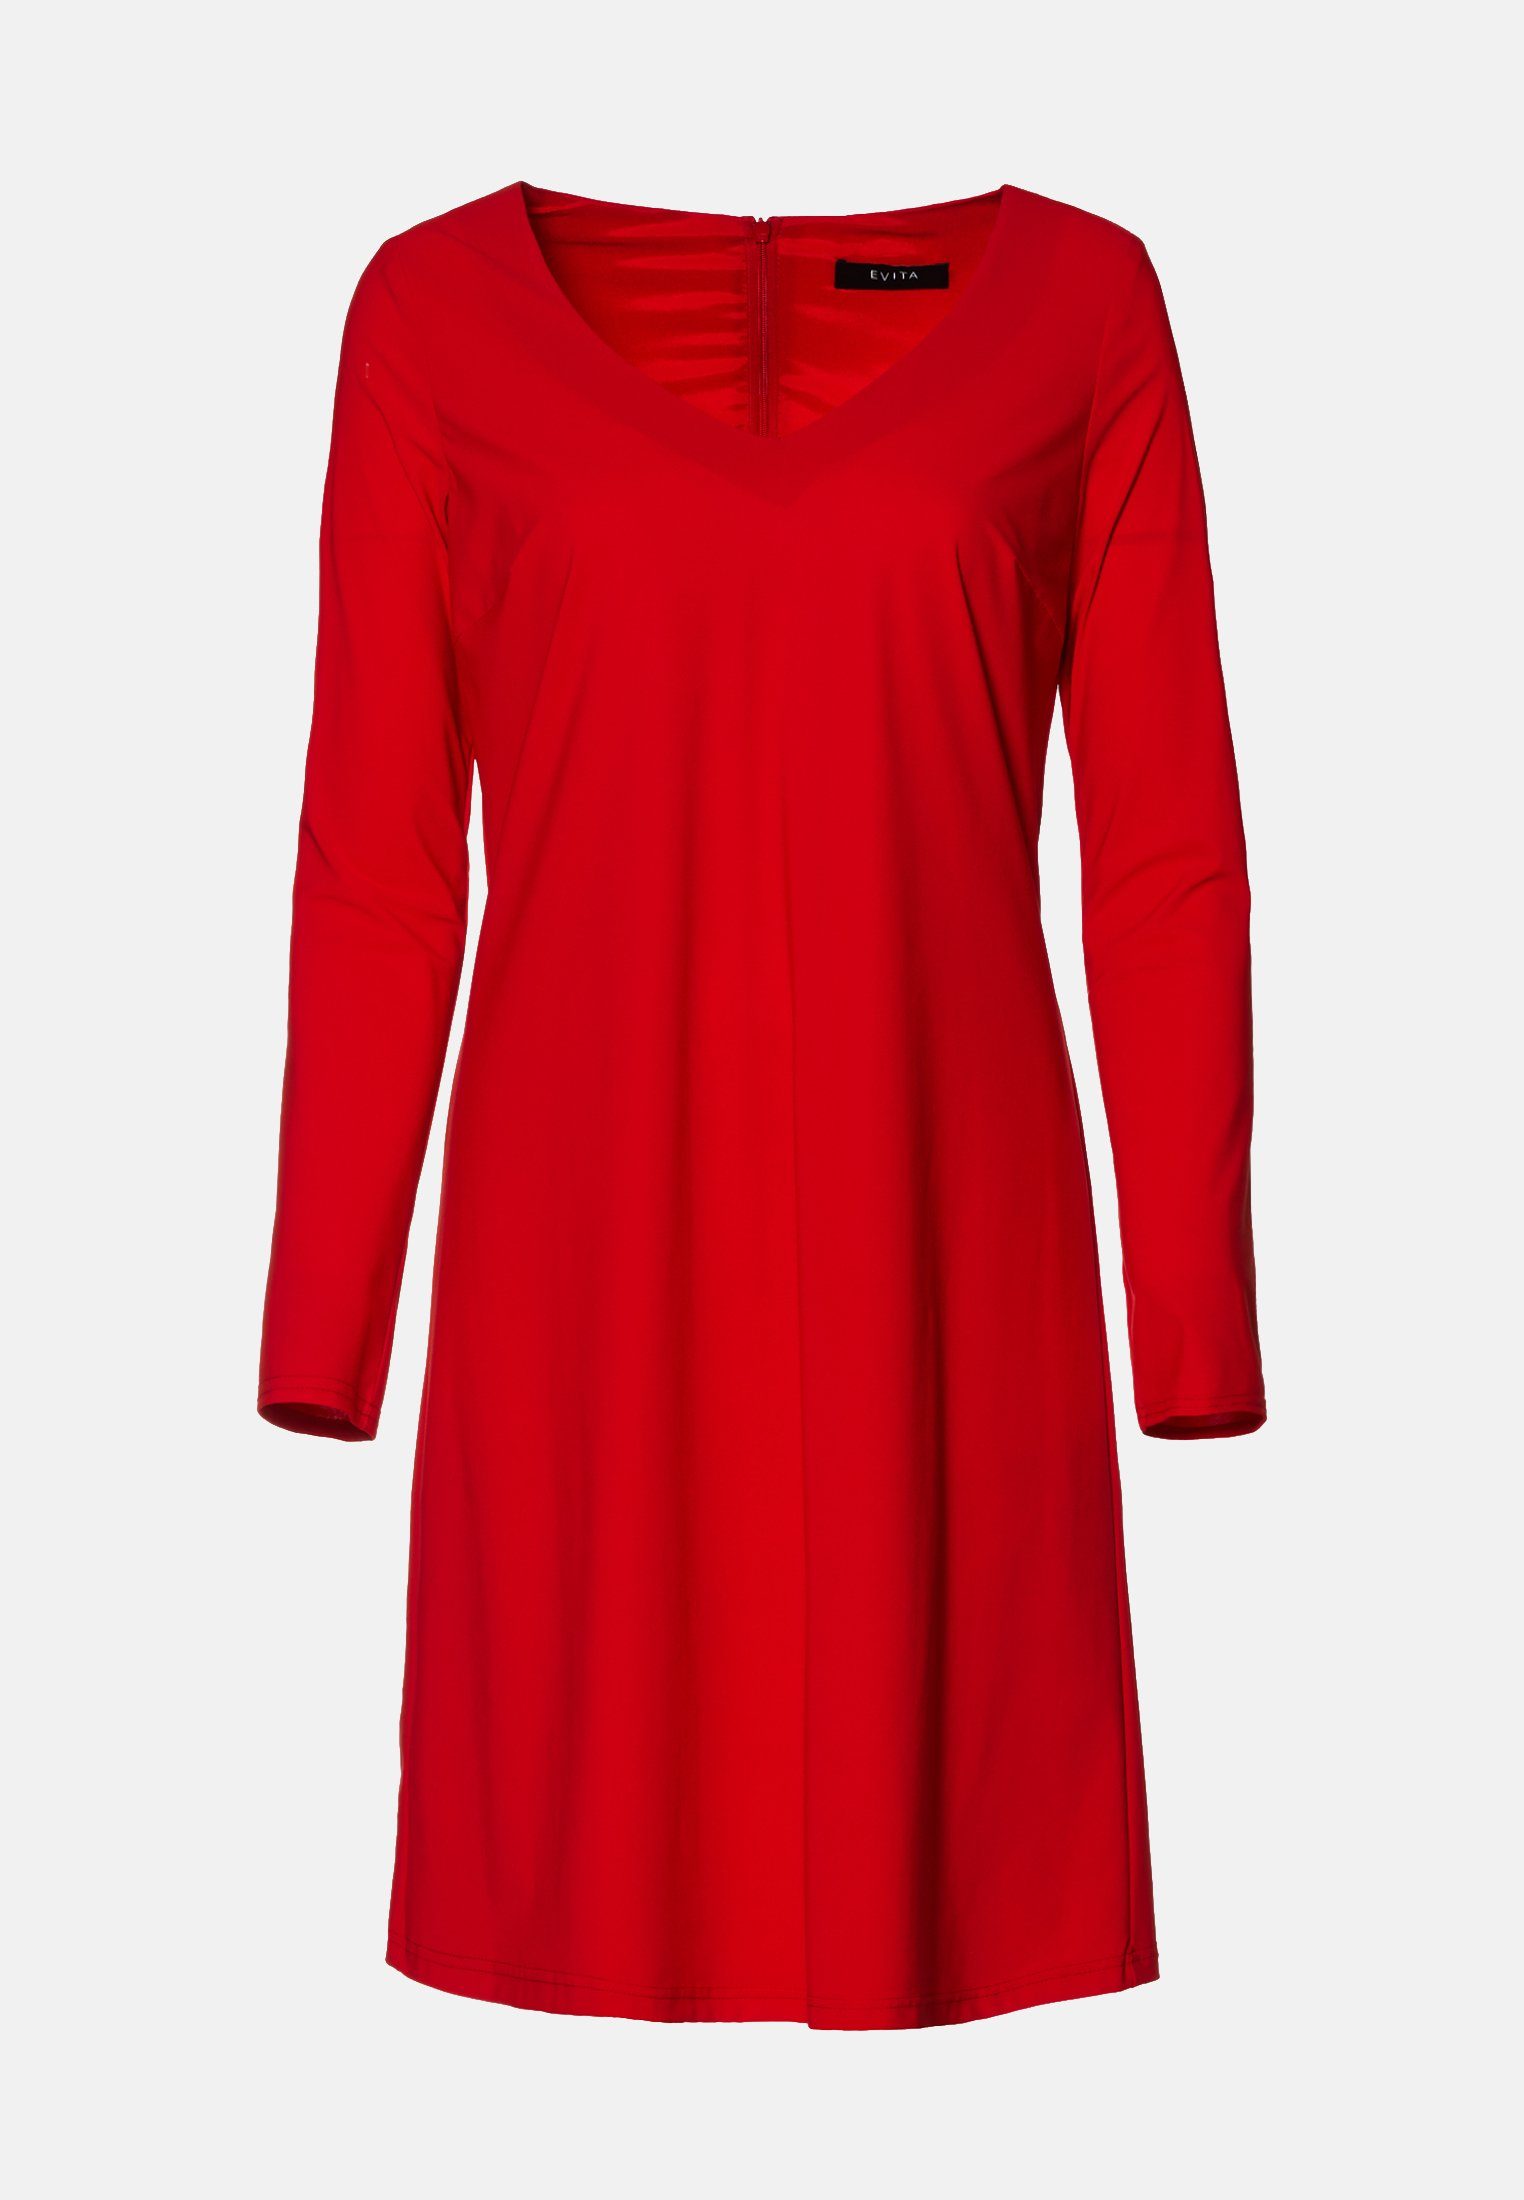 Evita A-Linien-Kleid bügelfrei online kaufen | OTTO